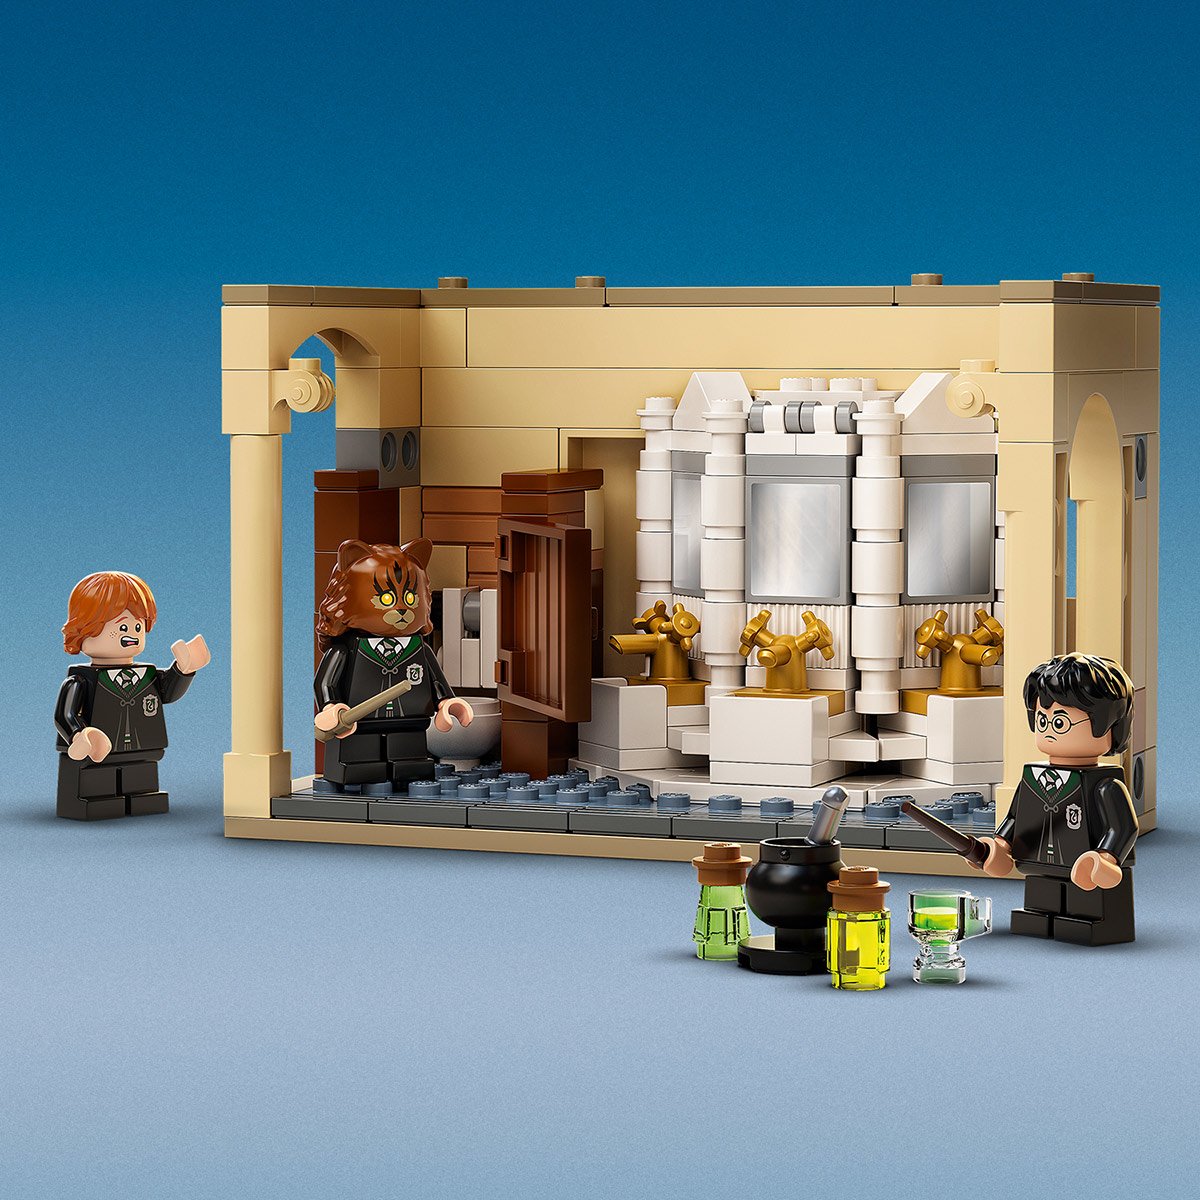 Lego Harry Potter - La Chambre des Secrets de Poudlard, Jouets de